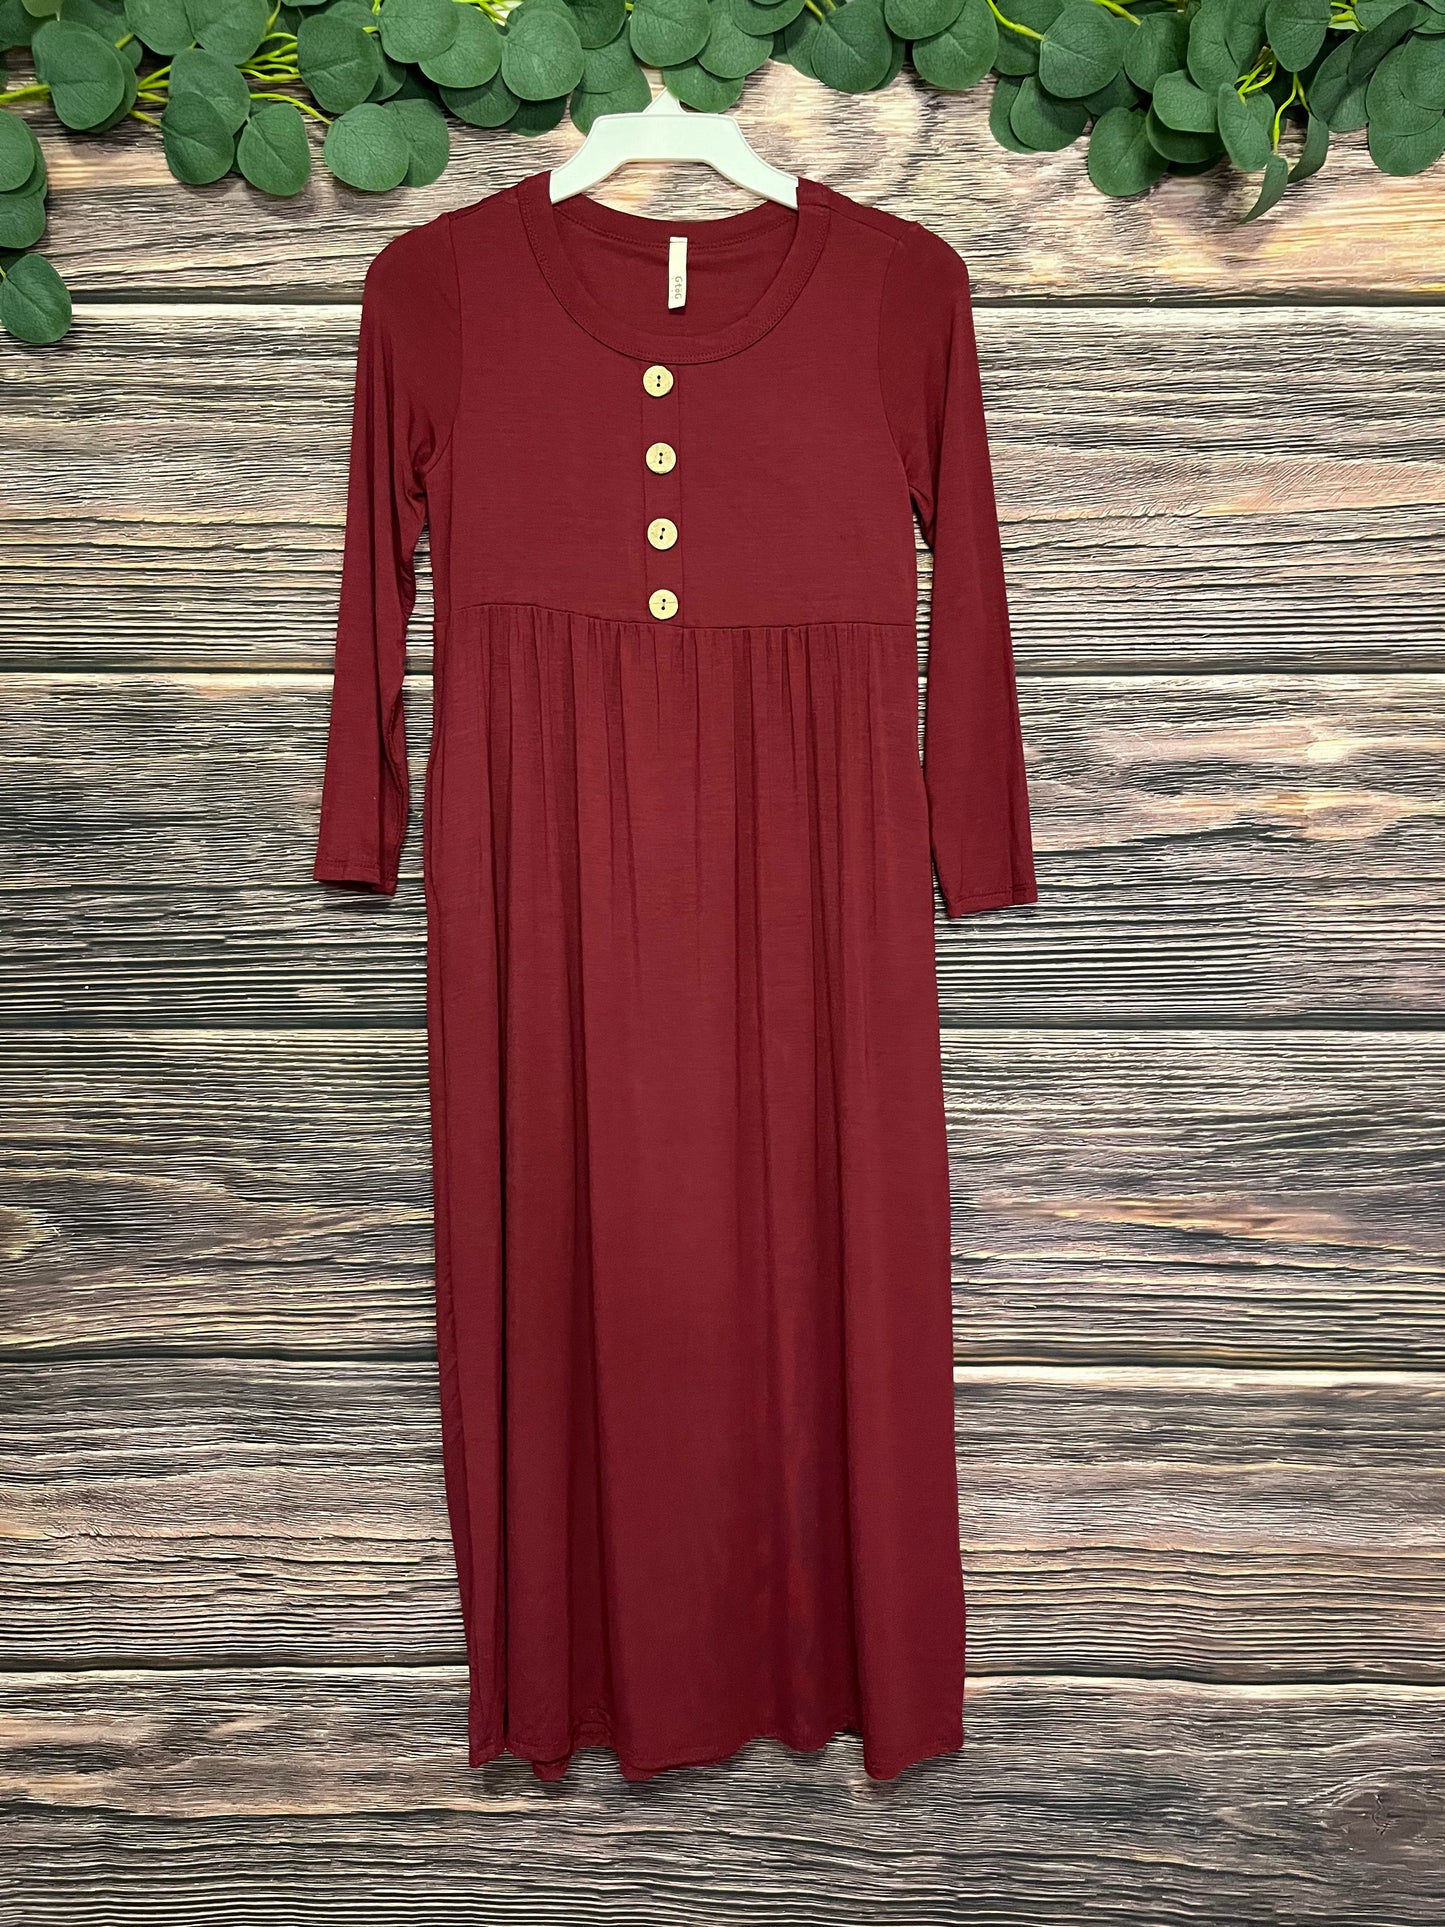 3/4 Sleeve Deep Burgundy Girls Maxi Dress